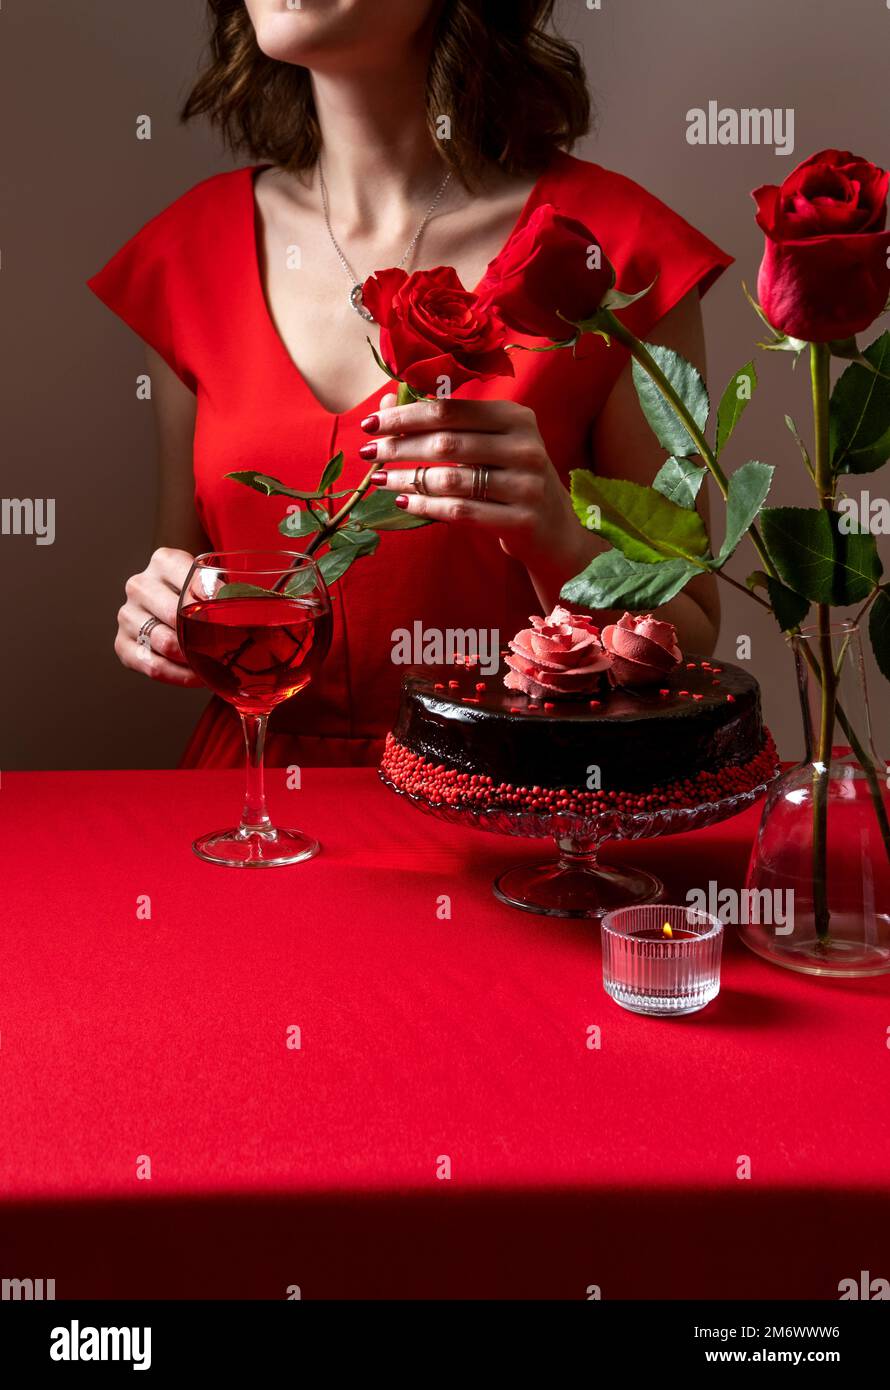 Donna in abito rosso con una mano che tiene una rosa rossa. Cena romantica a lume di candela. San Valentino. Impostazione tavolo festivo per San Valentino Foto Stock